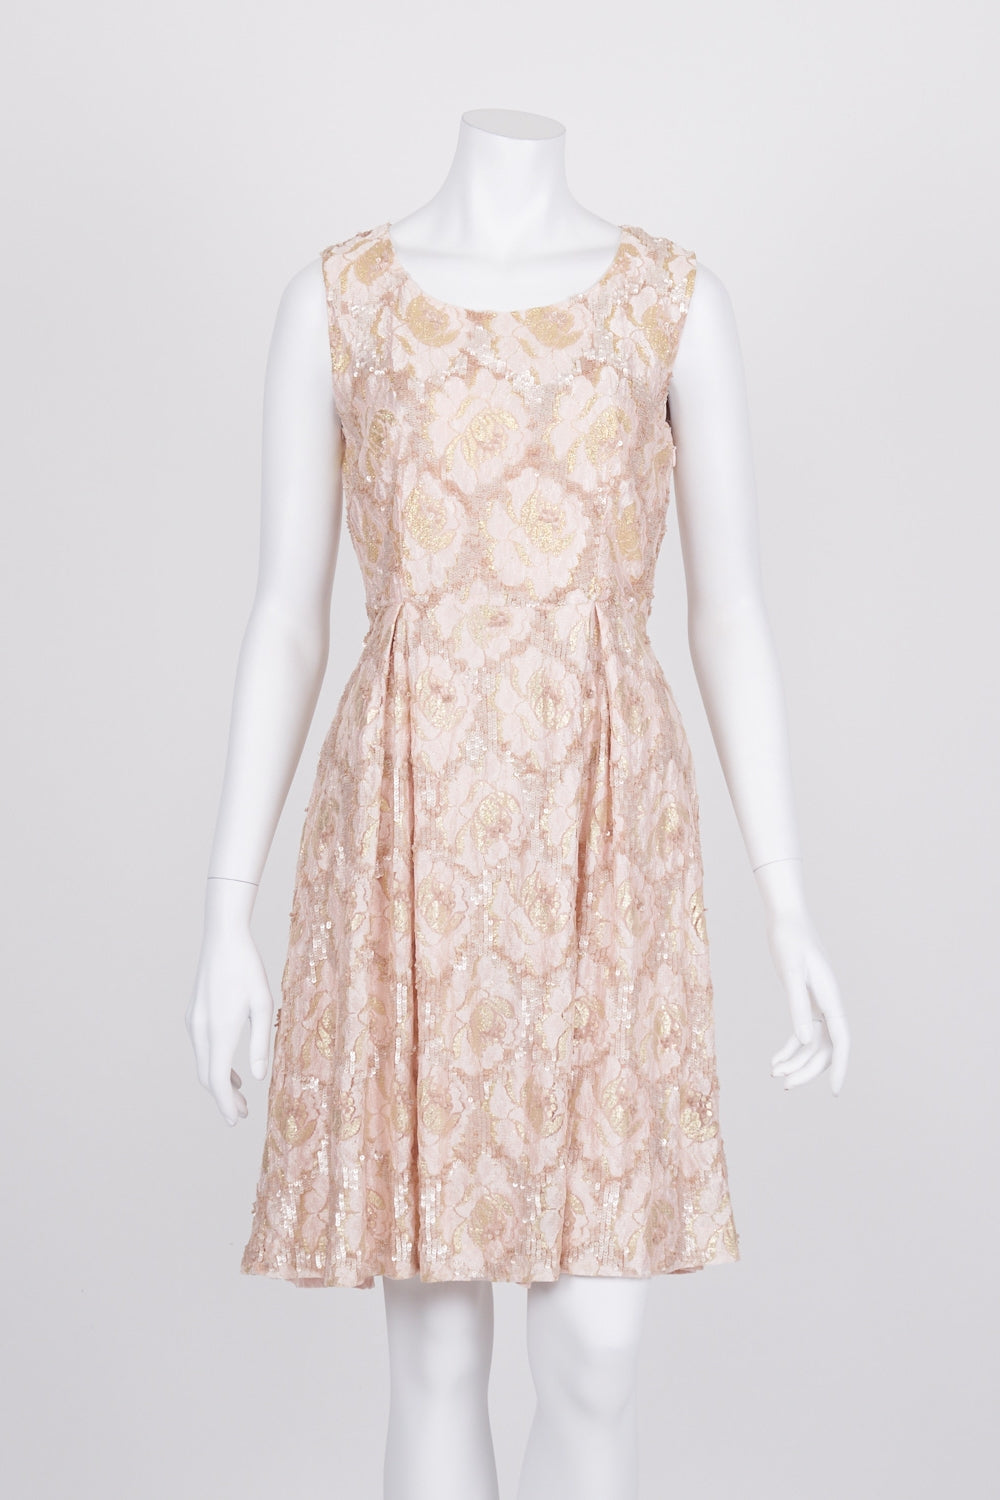 Alannah Hill Sequin Sleeveless Pleated Dress 10